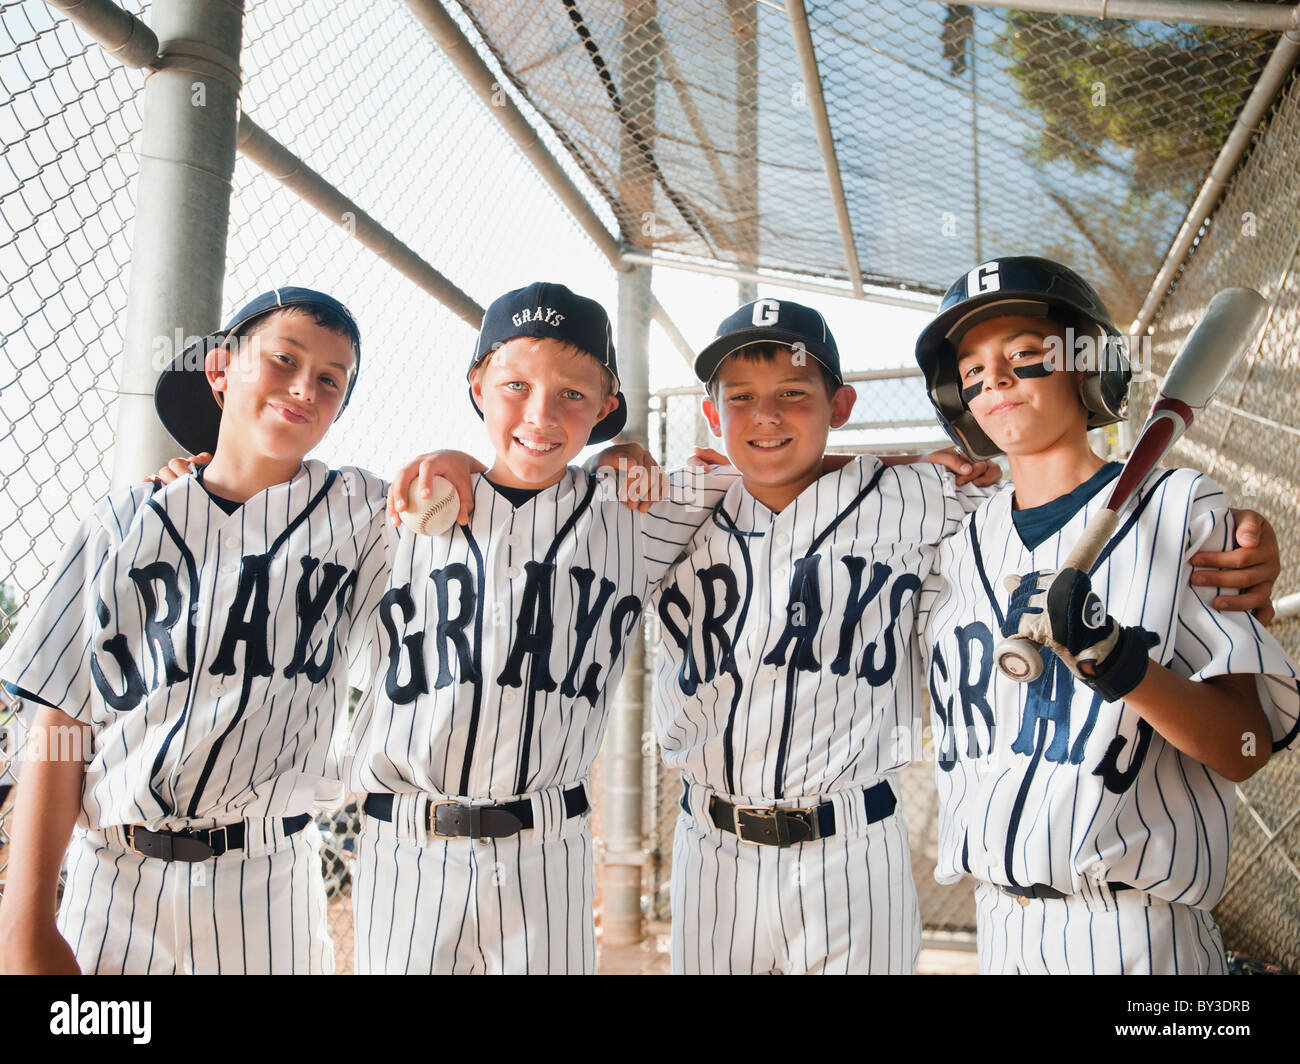 California, Estados Unidos, Ladera Ranch, muchachos (10-11) de Little League Baseball team Foto de stock